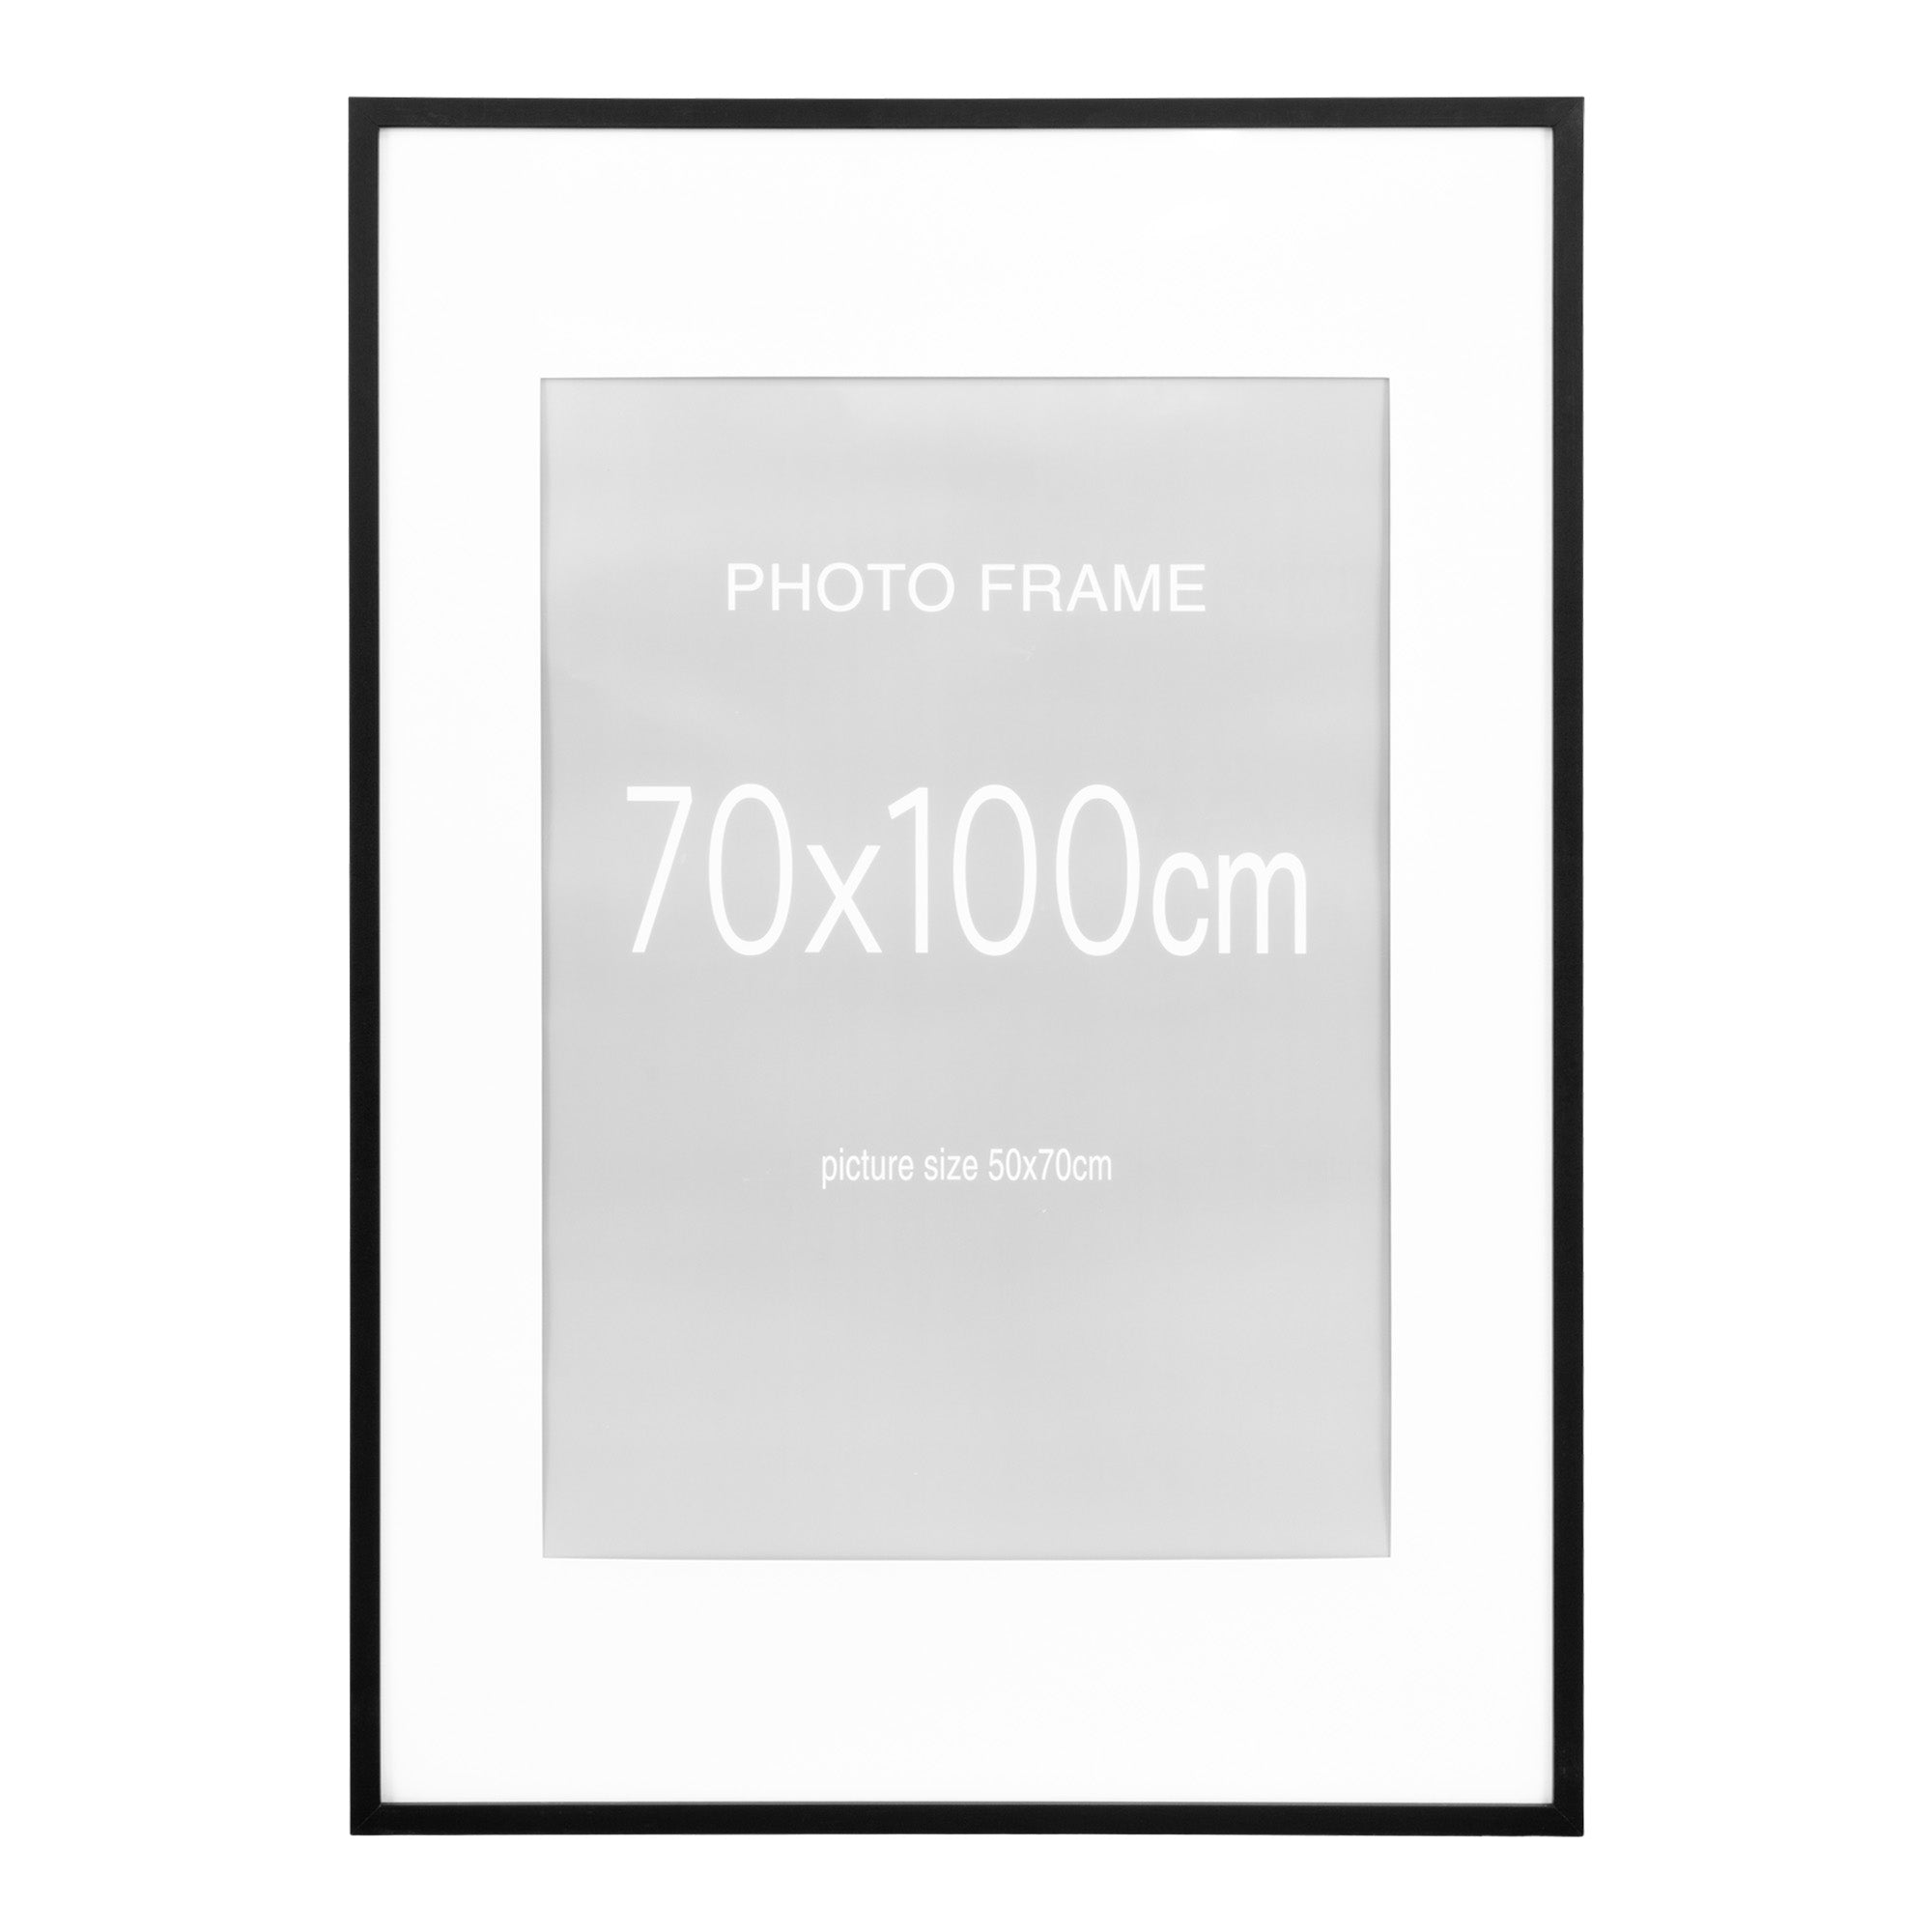 Marbella Ramme Display - Ramme, Mdf, 7 Stk. Sort Og 8 Stk. Natur, 70X100 Cm ⎮ 5713917016716 ⎮ 4981006 